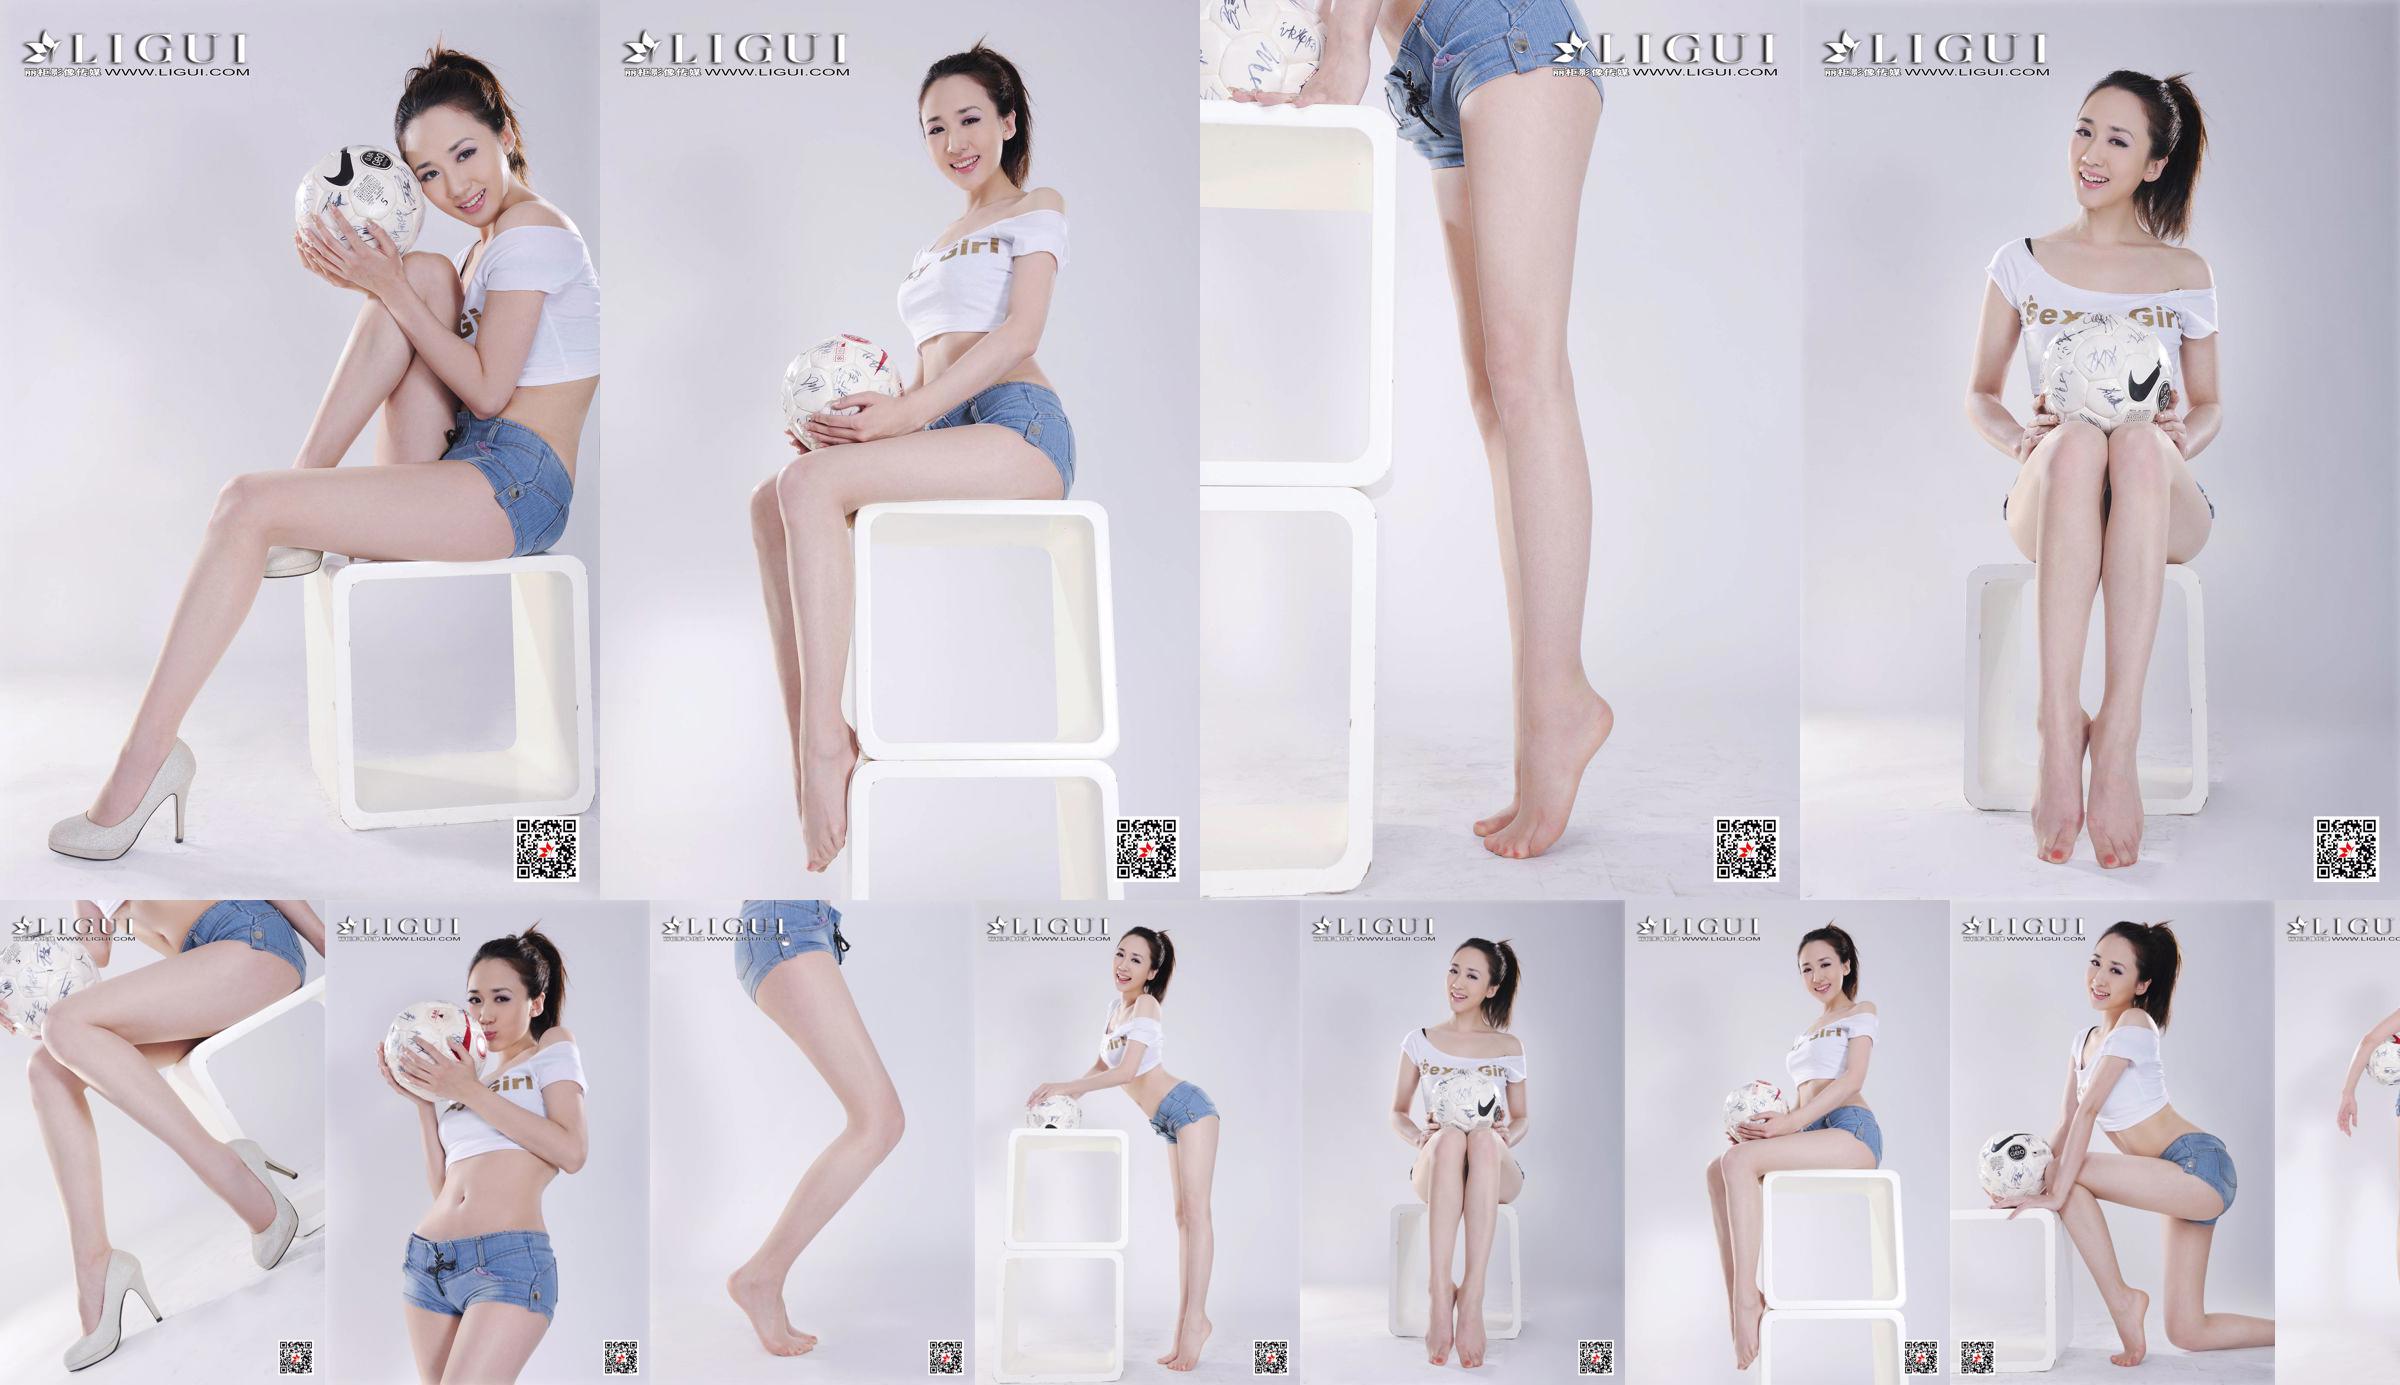 Model Qiu Chen "Super Short Hot Pants Football Girl" [LIGUI] No.389336 Page 3